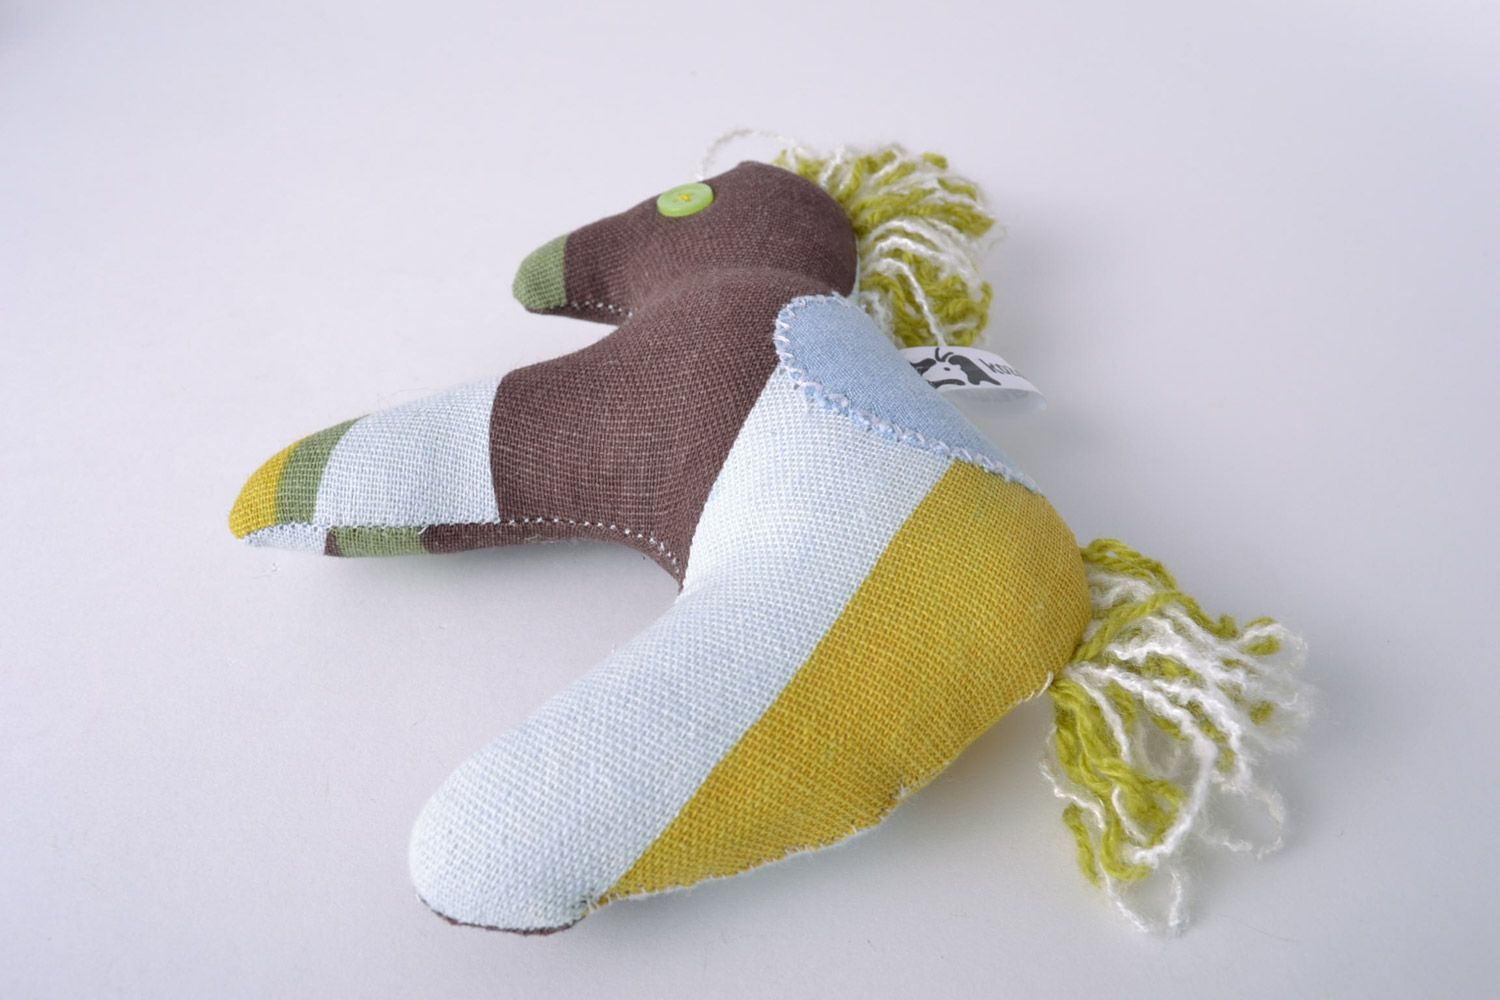 Текстильная мягкая игрушка ручной работы Конь красивая авторская дизайнерская фото 2